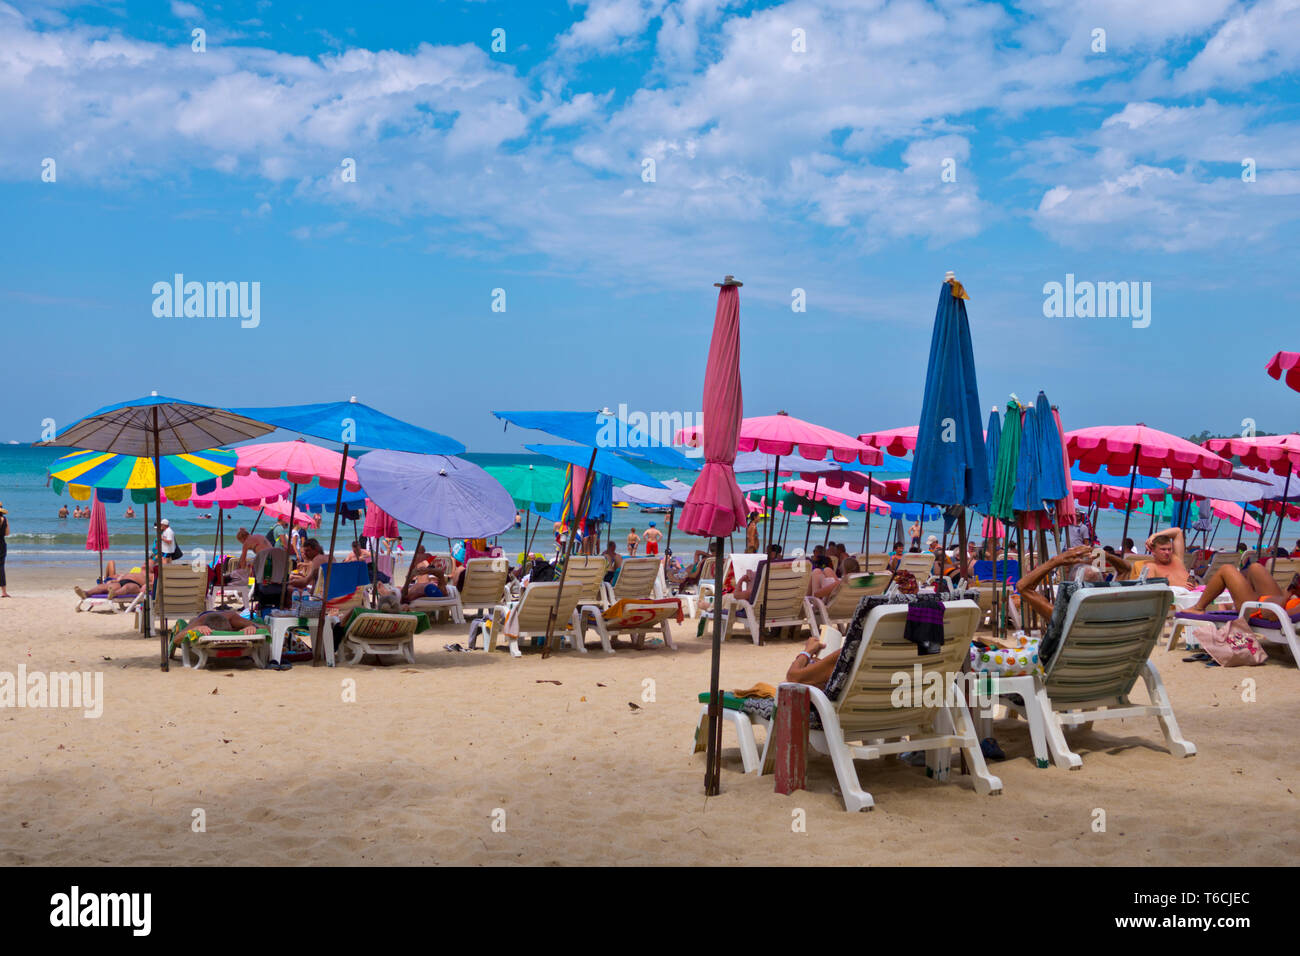 Hat Kamala, beach, Kamala, l'île de Phuket, Thaïlande Banque D'Images